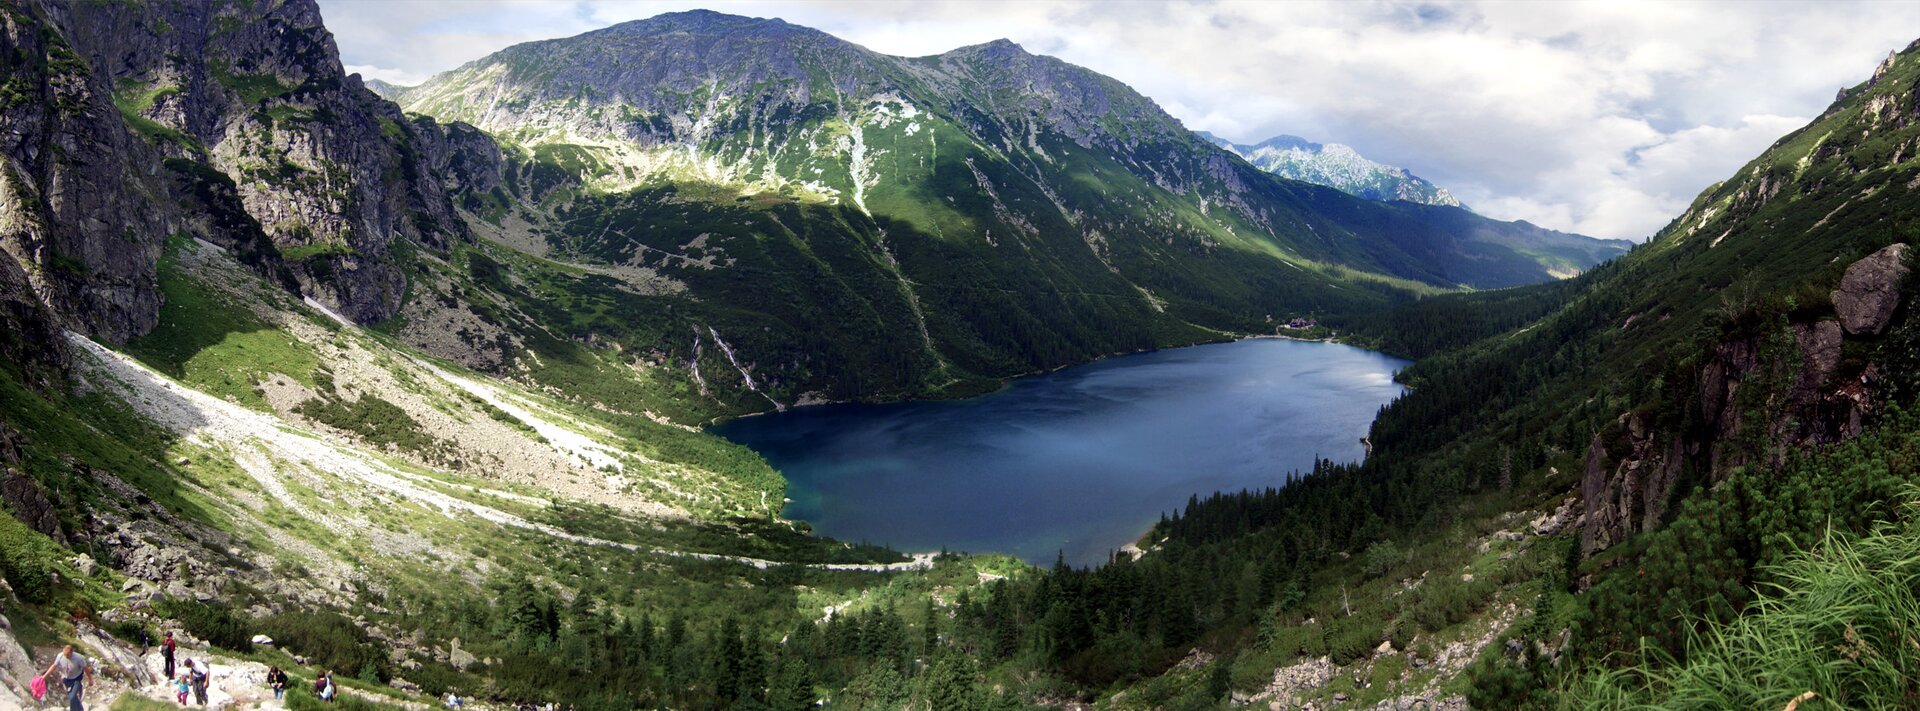 Na zdjęciu wysokie góry, szczyty skaliste, w dolinie jezioro o regularnym kształcie.